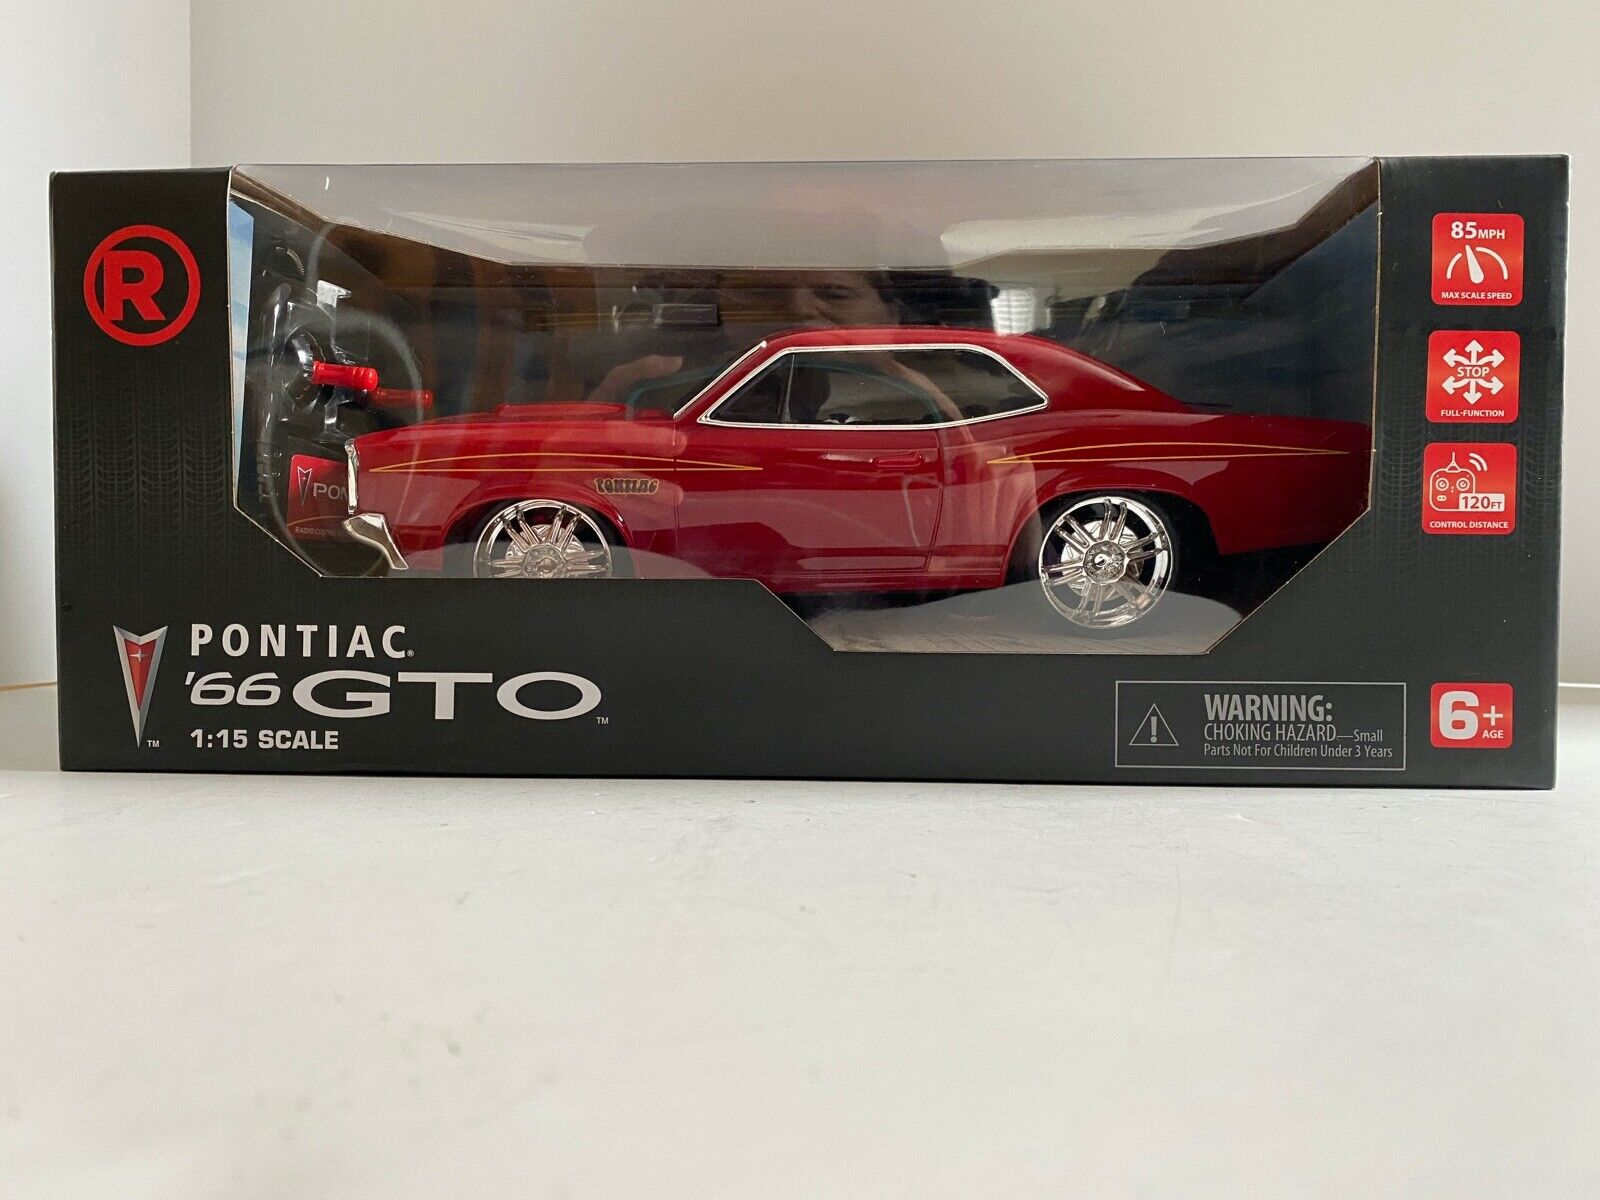 Radio Shack 1966 Pontiac GTO Remote Control Car New In Box